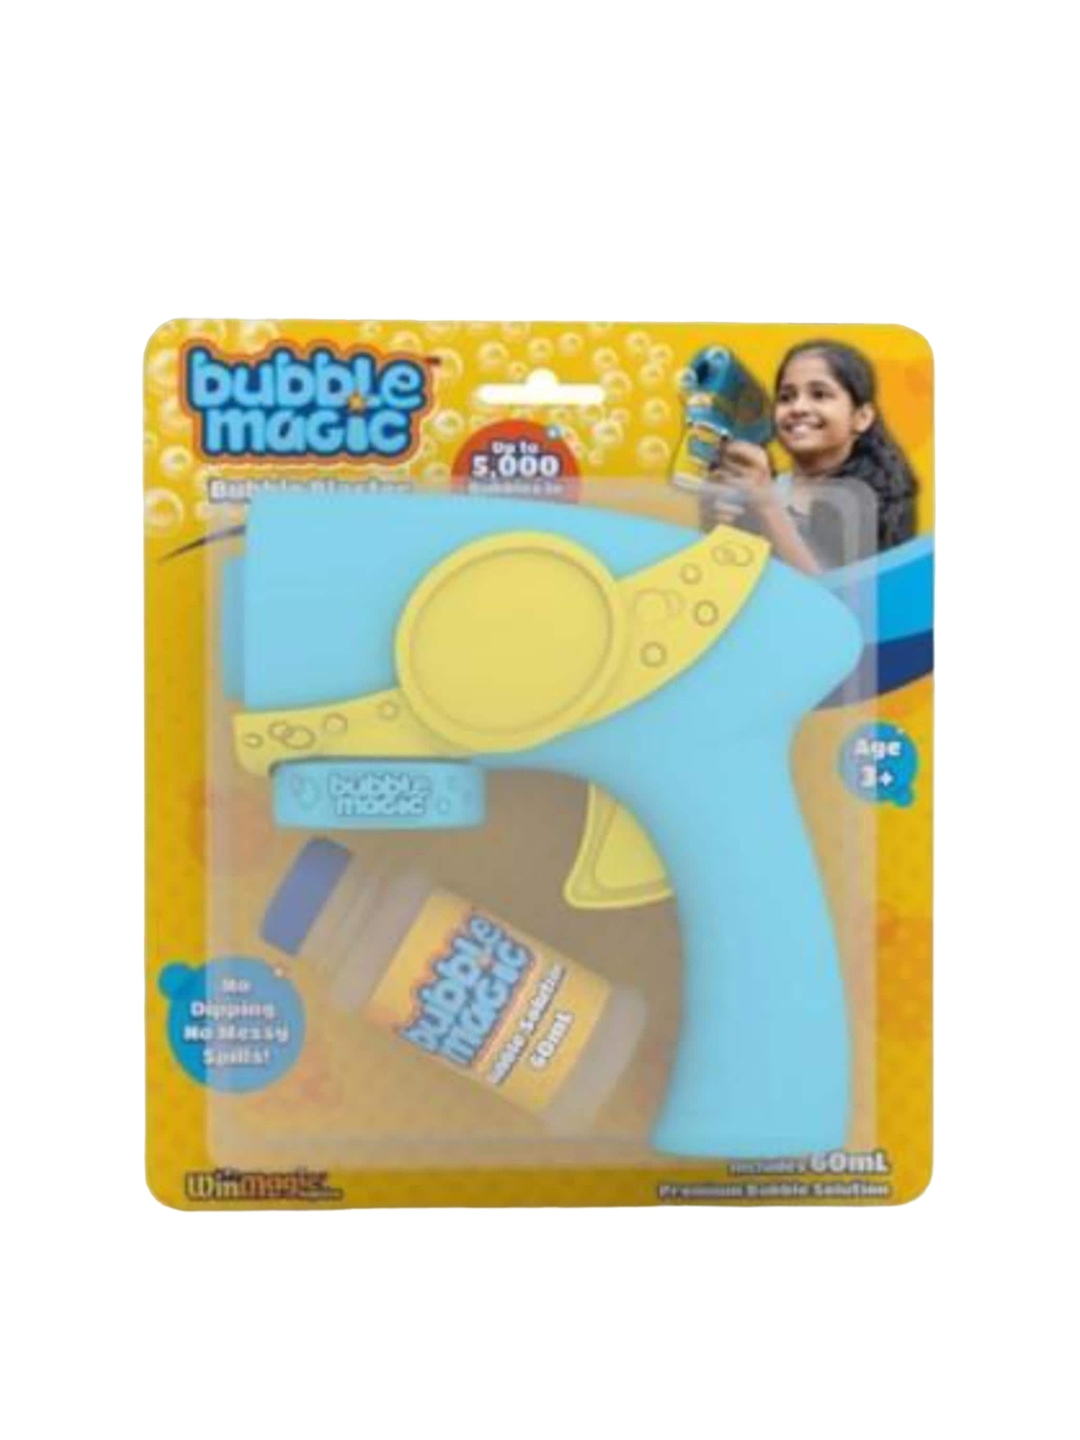 

bubble magic Kids Bubble Bluster With Premium Bubble Solution, Blue